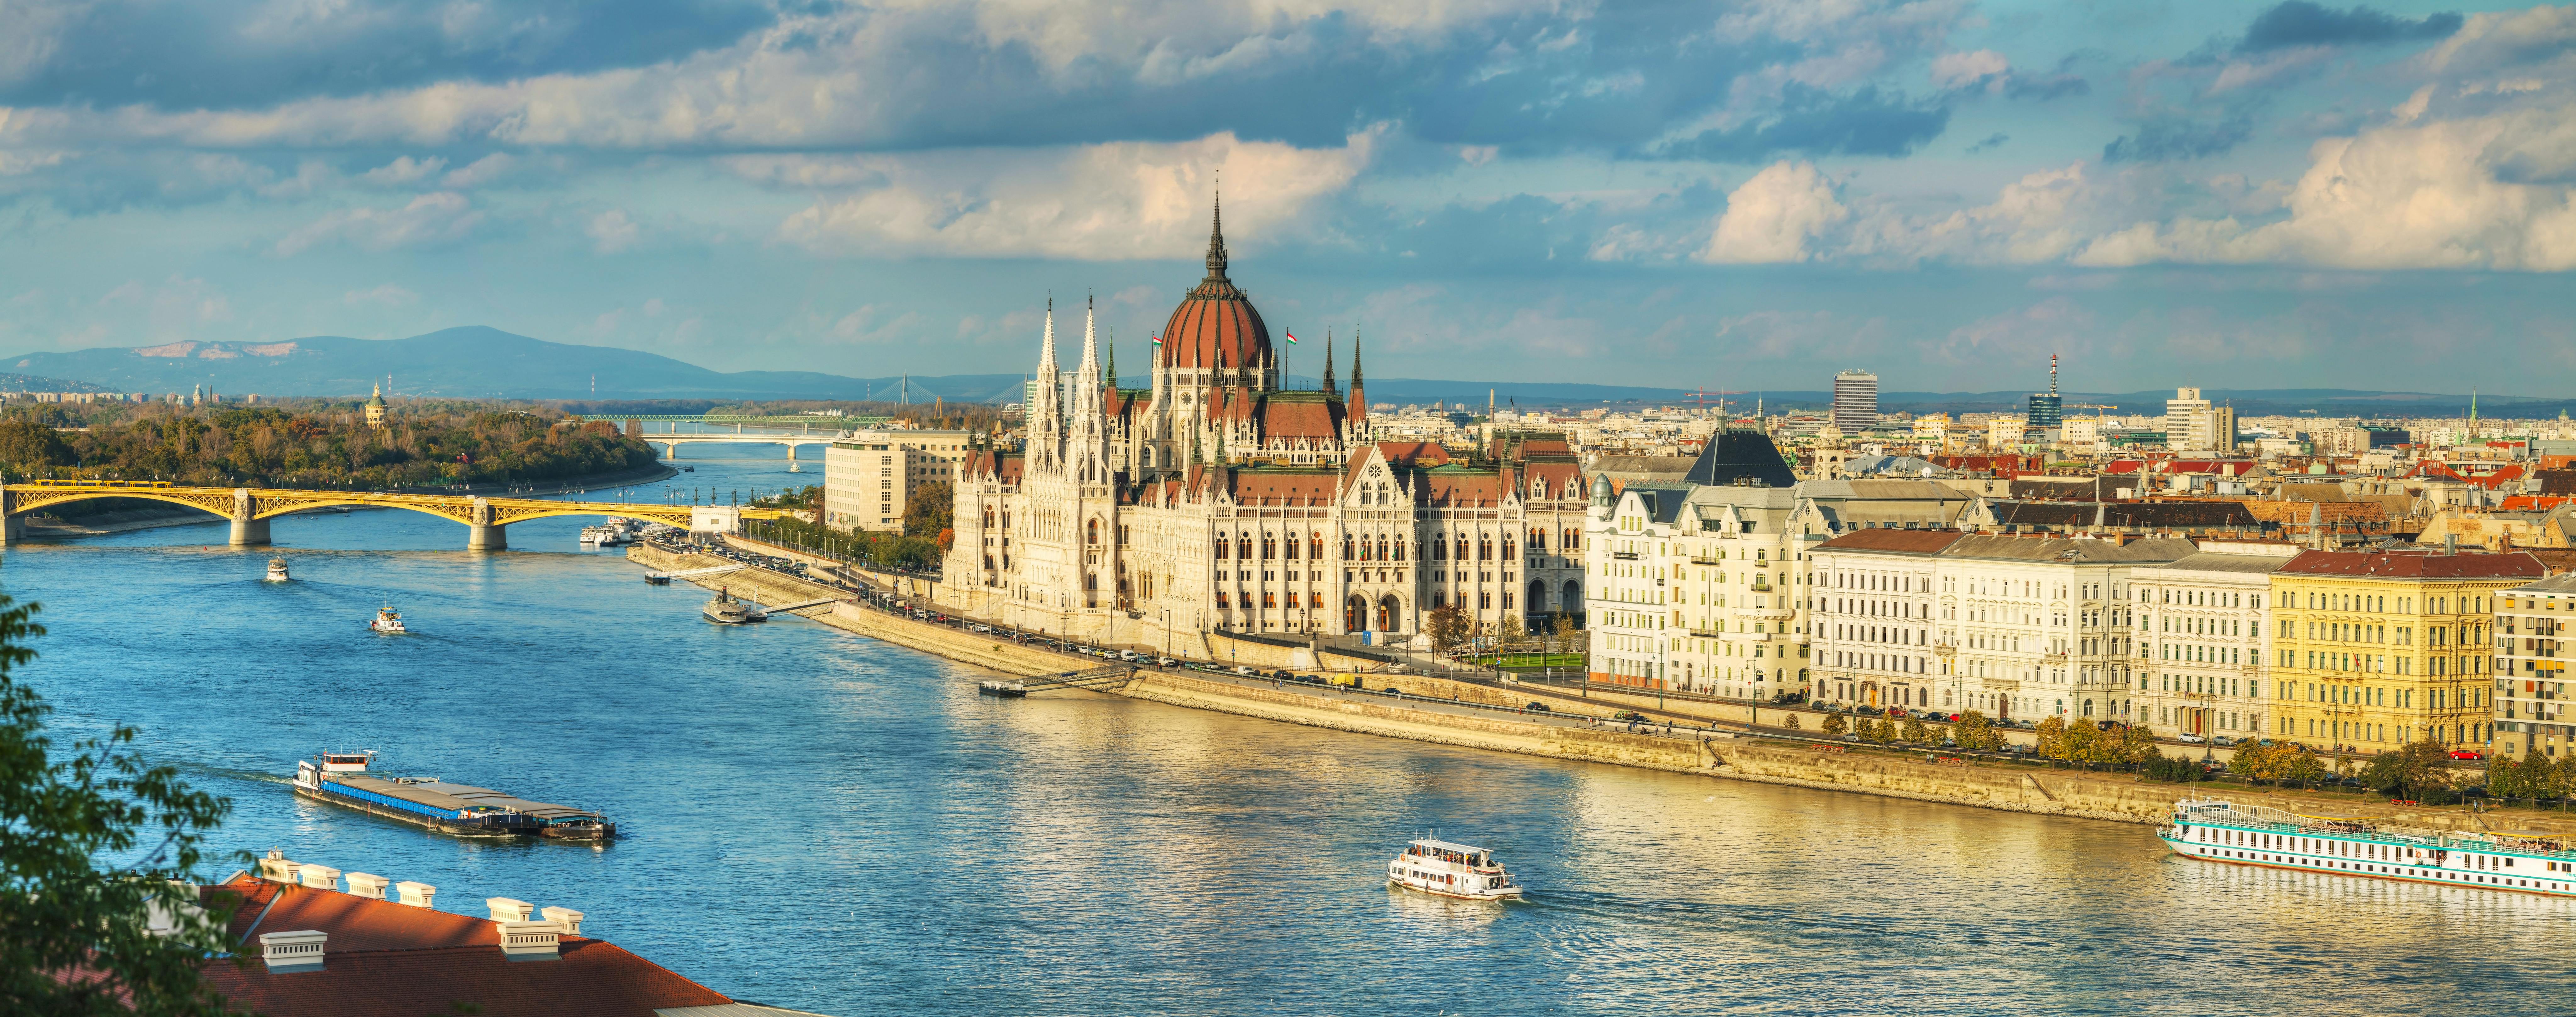 Private Bootstour in Budapest für 1 oder 2 Stunden